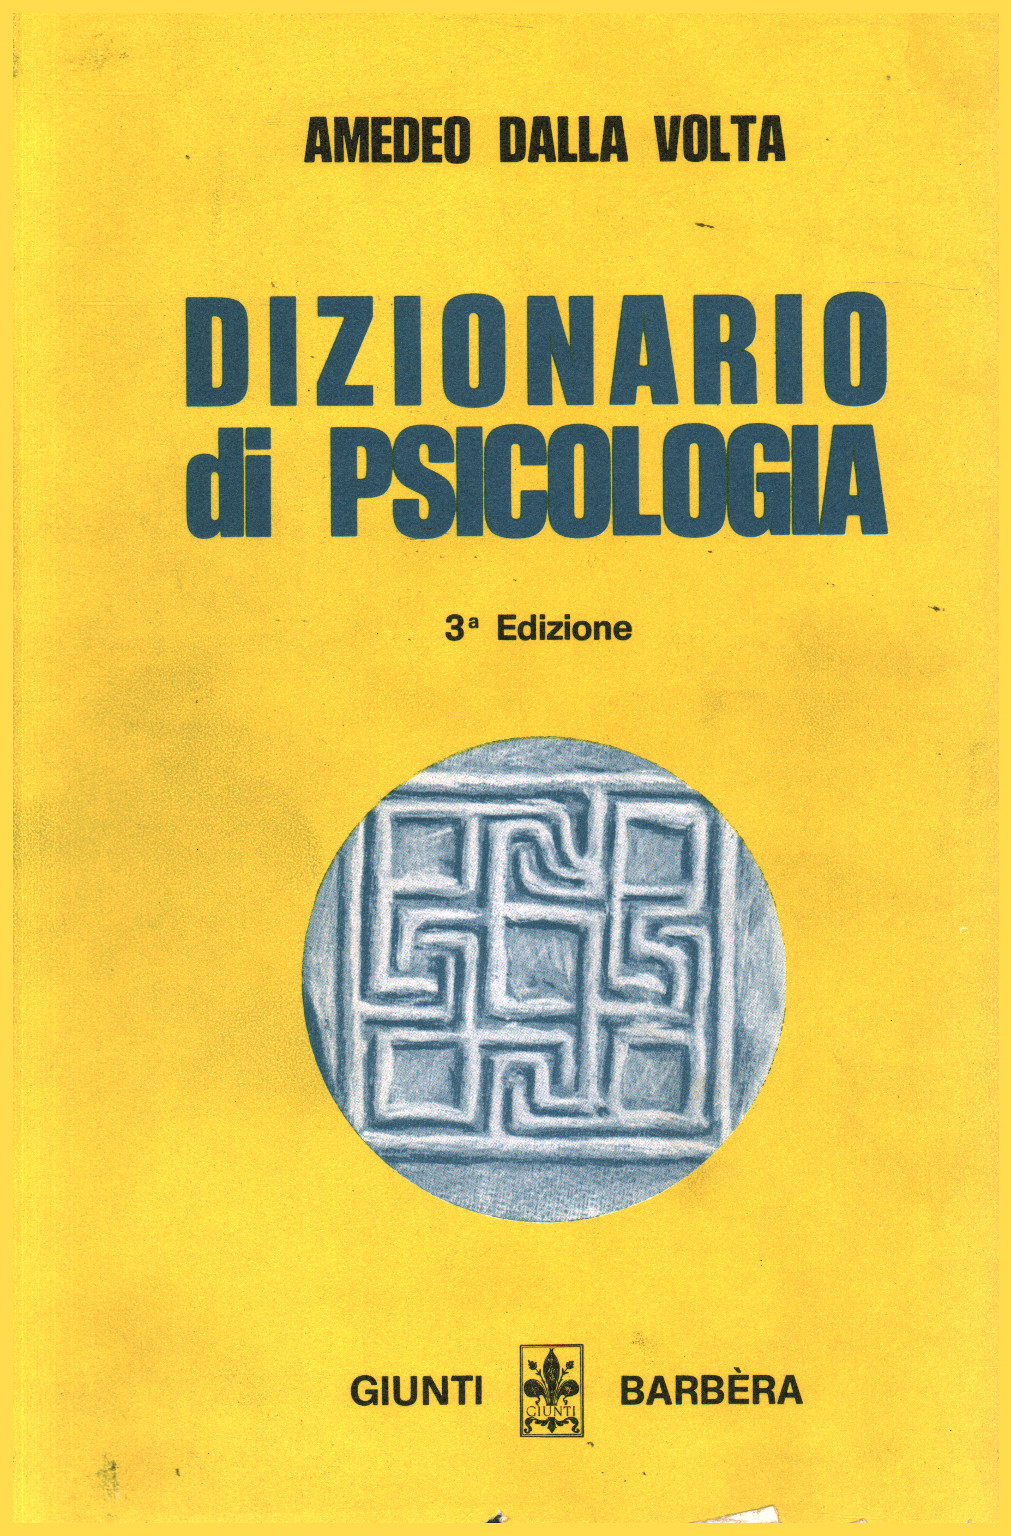 Dizionario di psicologia, s.a.